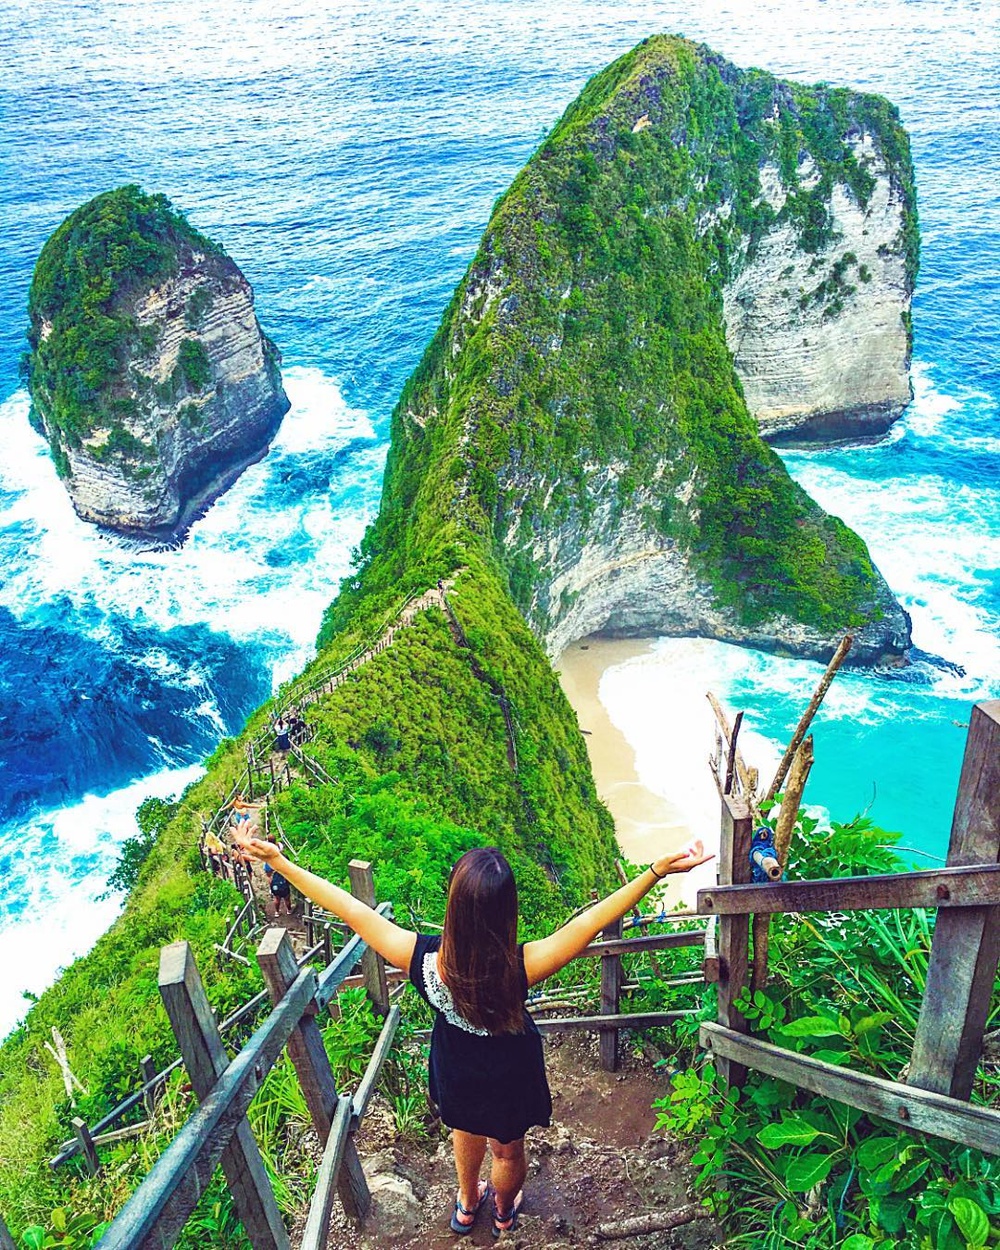  
Cảnh đẹp ở Bali được chụp bởi tài khoản Instagram của @lea_gin